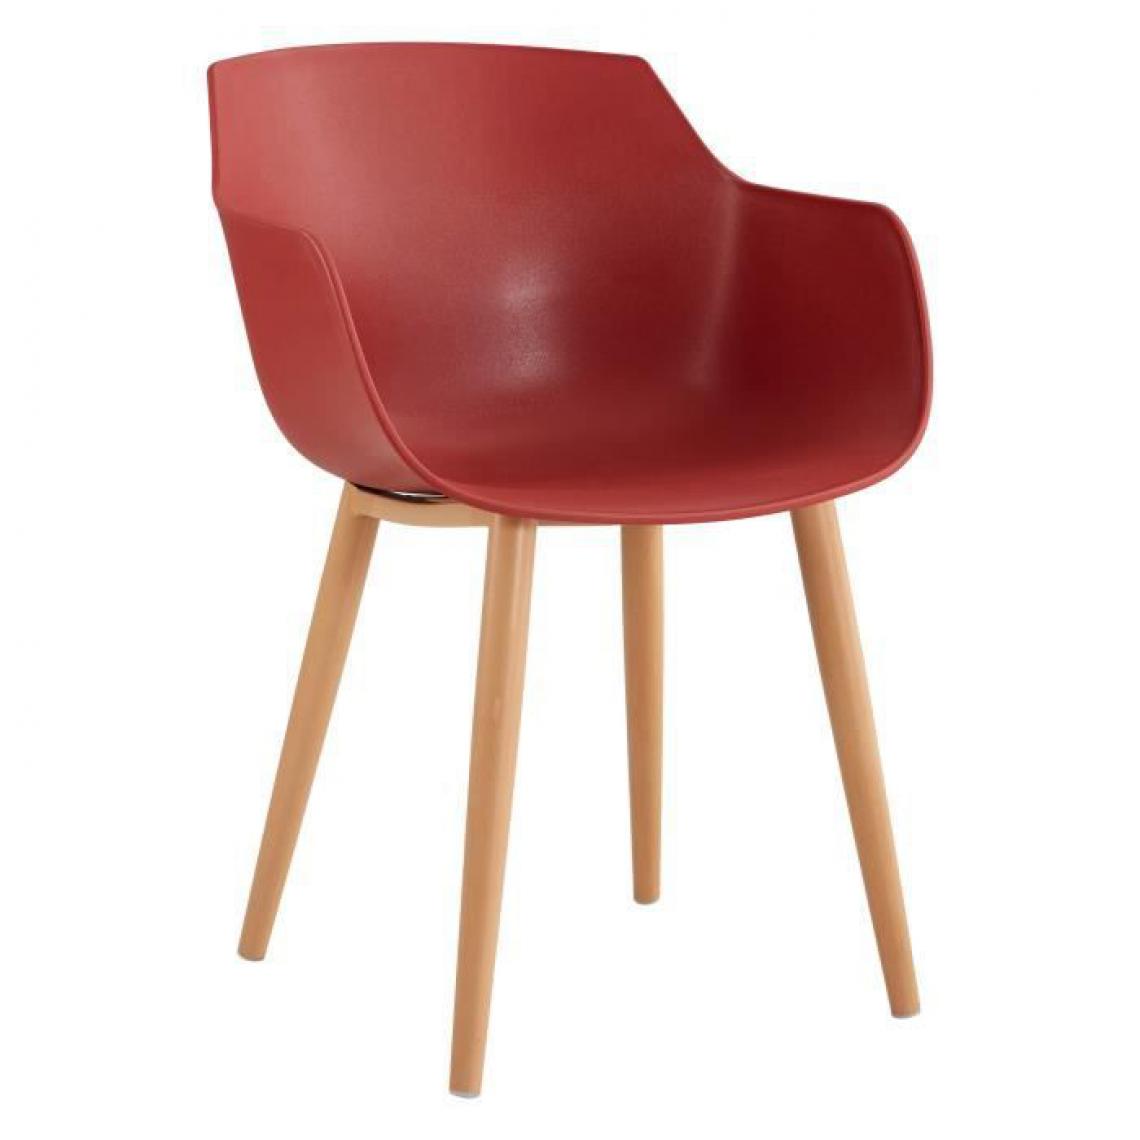 Icaverne - CHAISE THEA Lot de 2 chaises de salle a manger - Style scandinave - Rouge terracotta - L 56 x P 57 x H 79 cm - Chaises